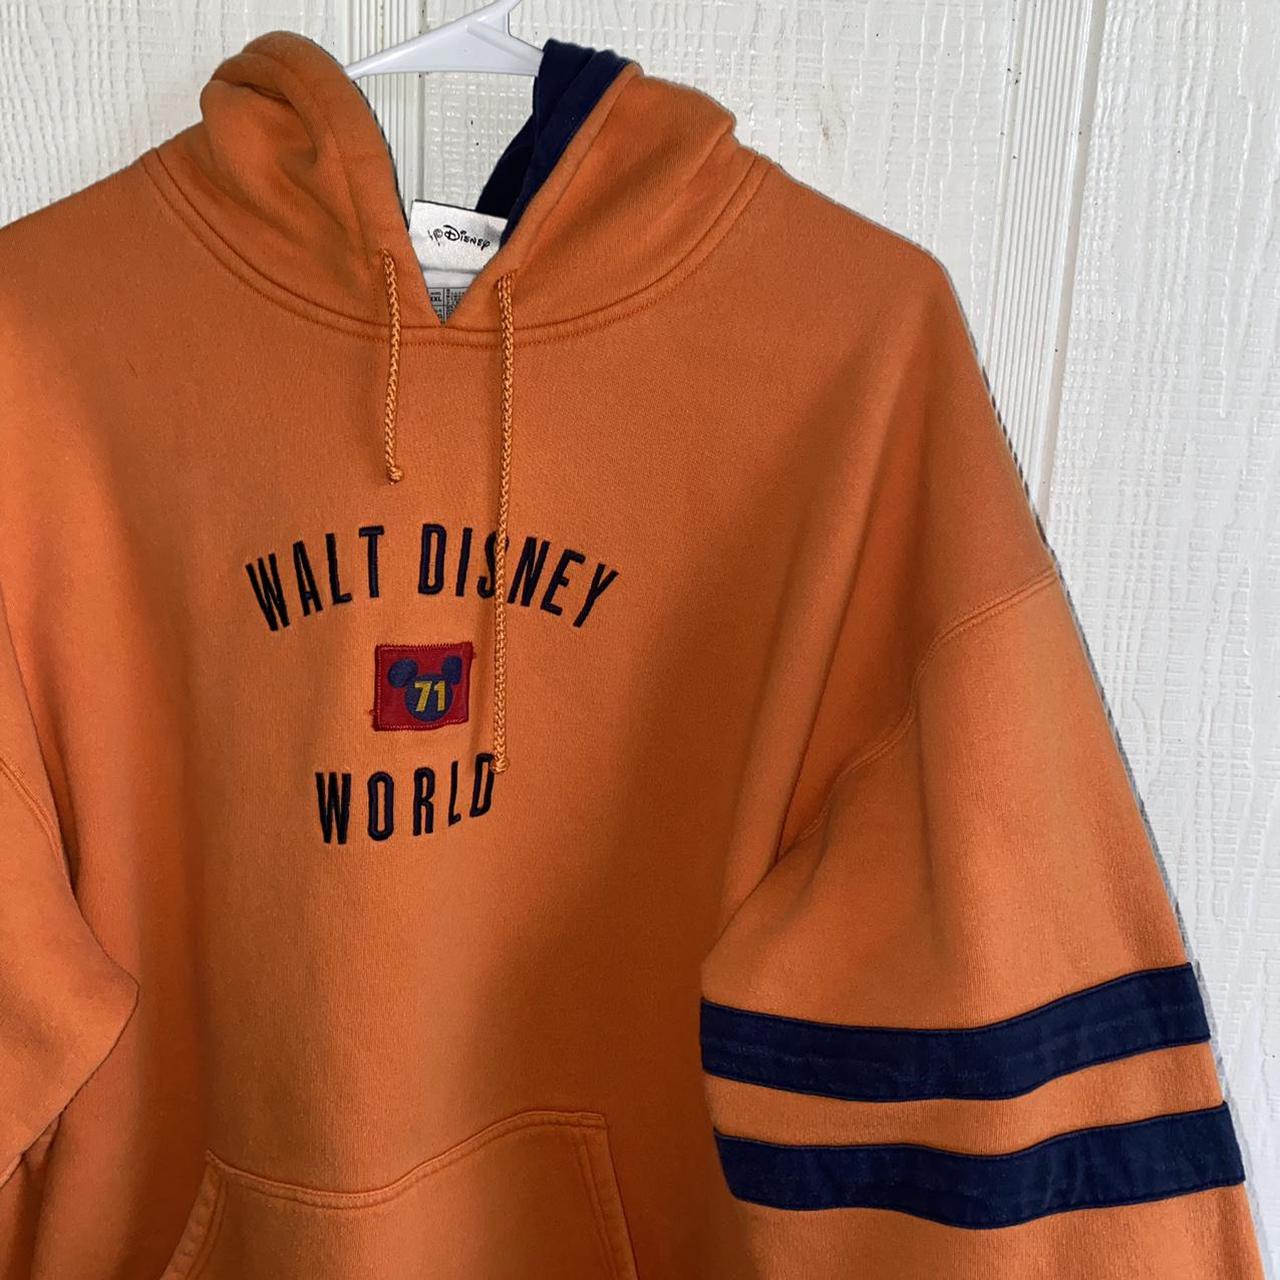 Product Image 2 - Disney world orange hoodie
Size xxl
FREE